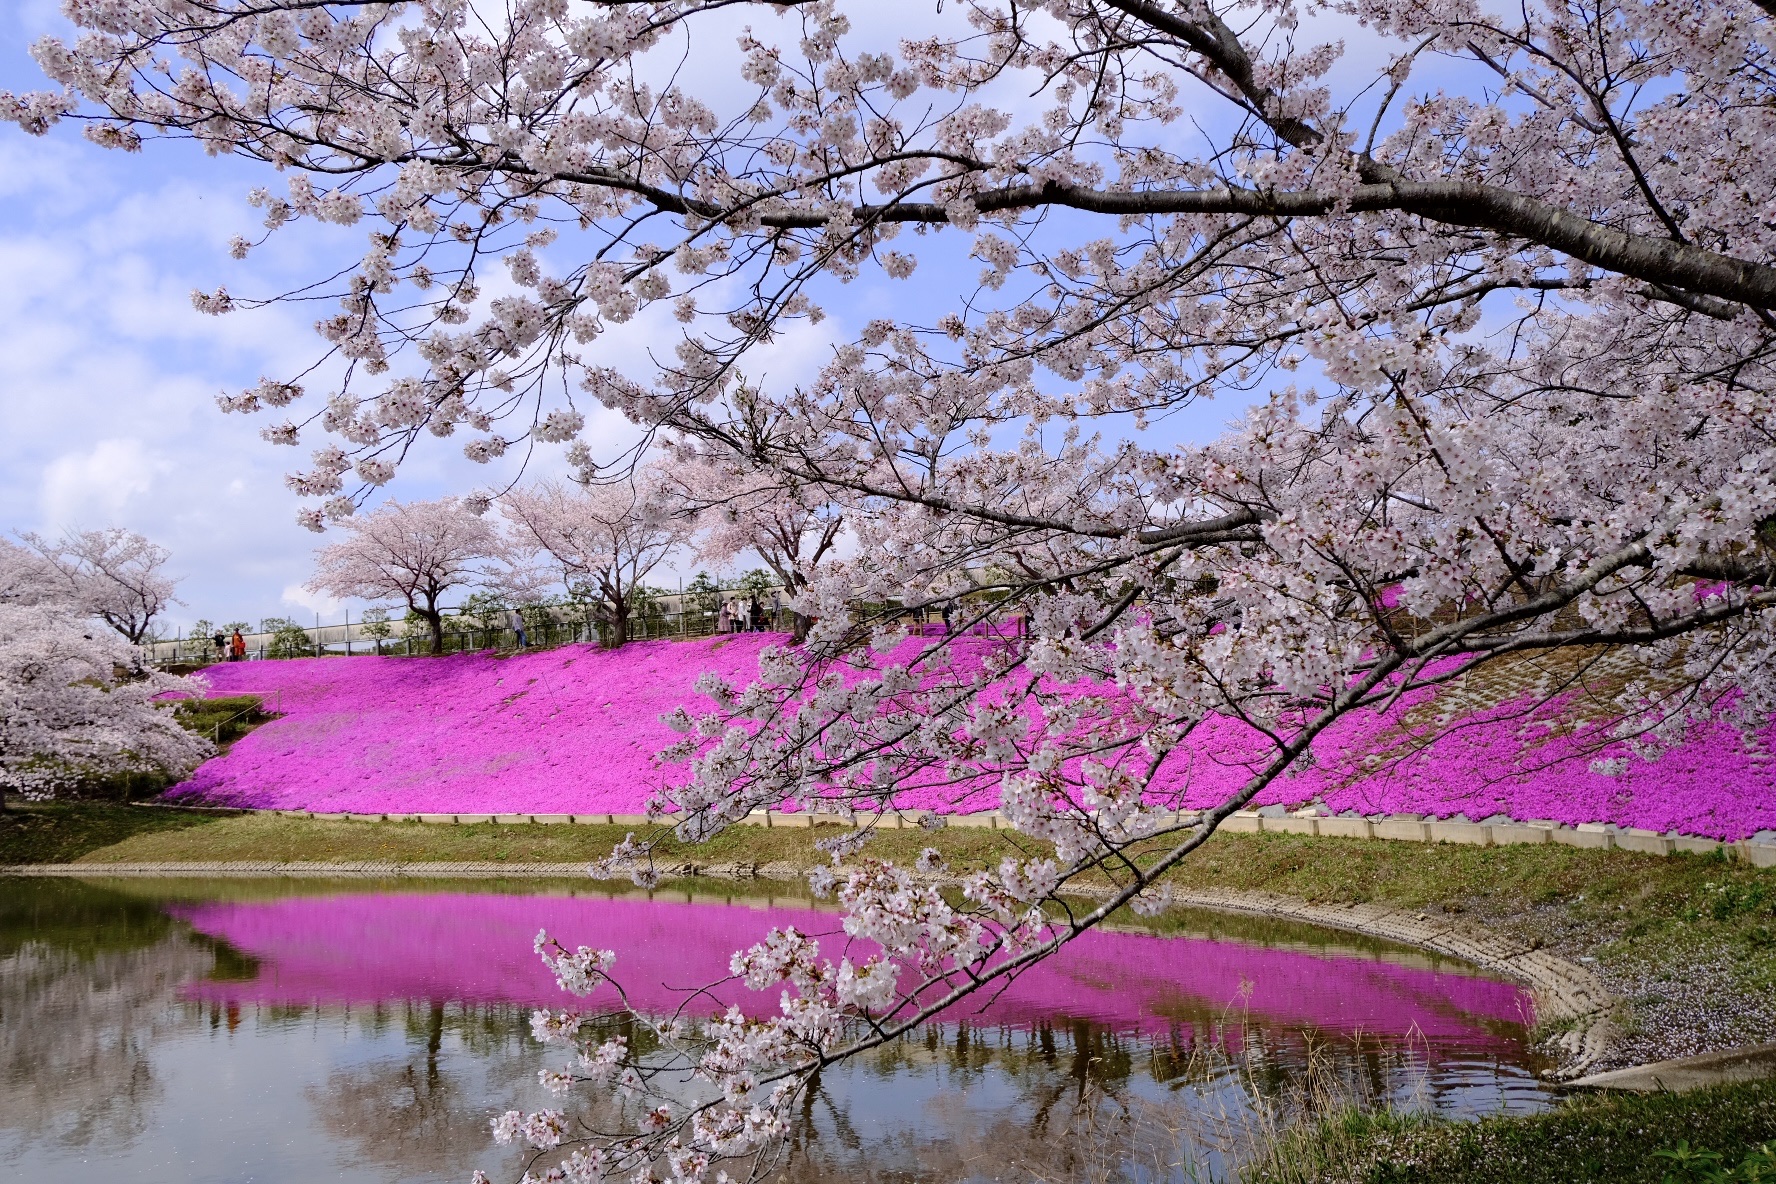 Mê mẩn ngắm hoa anh đào ở Nhật Bản